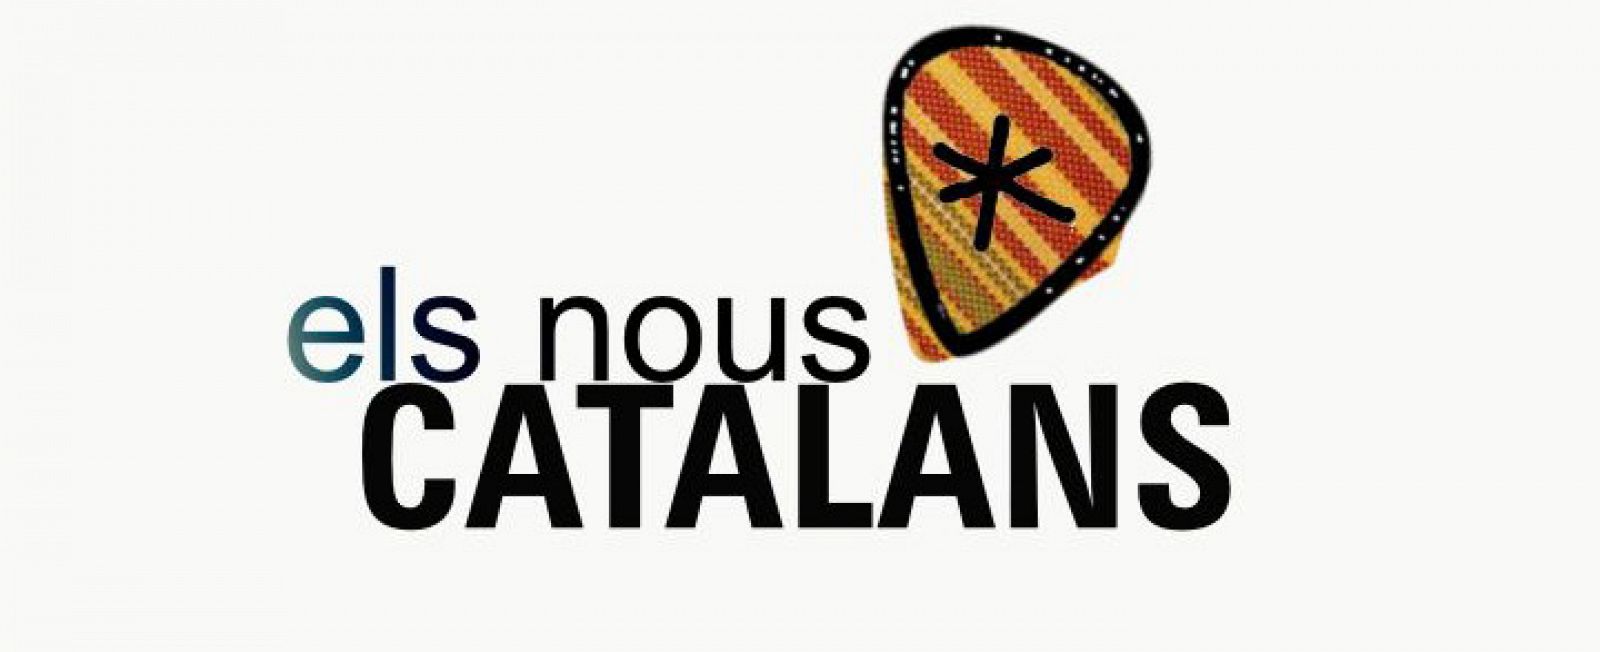 Logo Els nous catalans, fons blanc